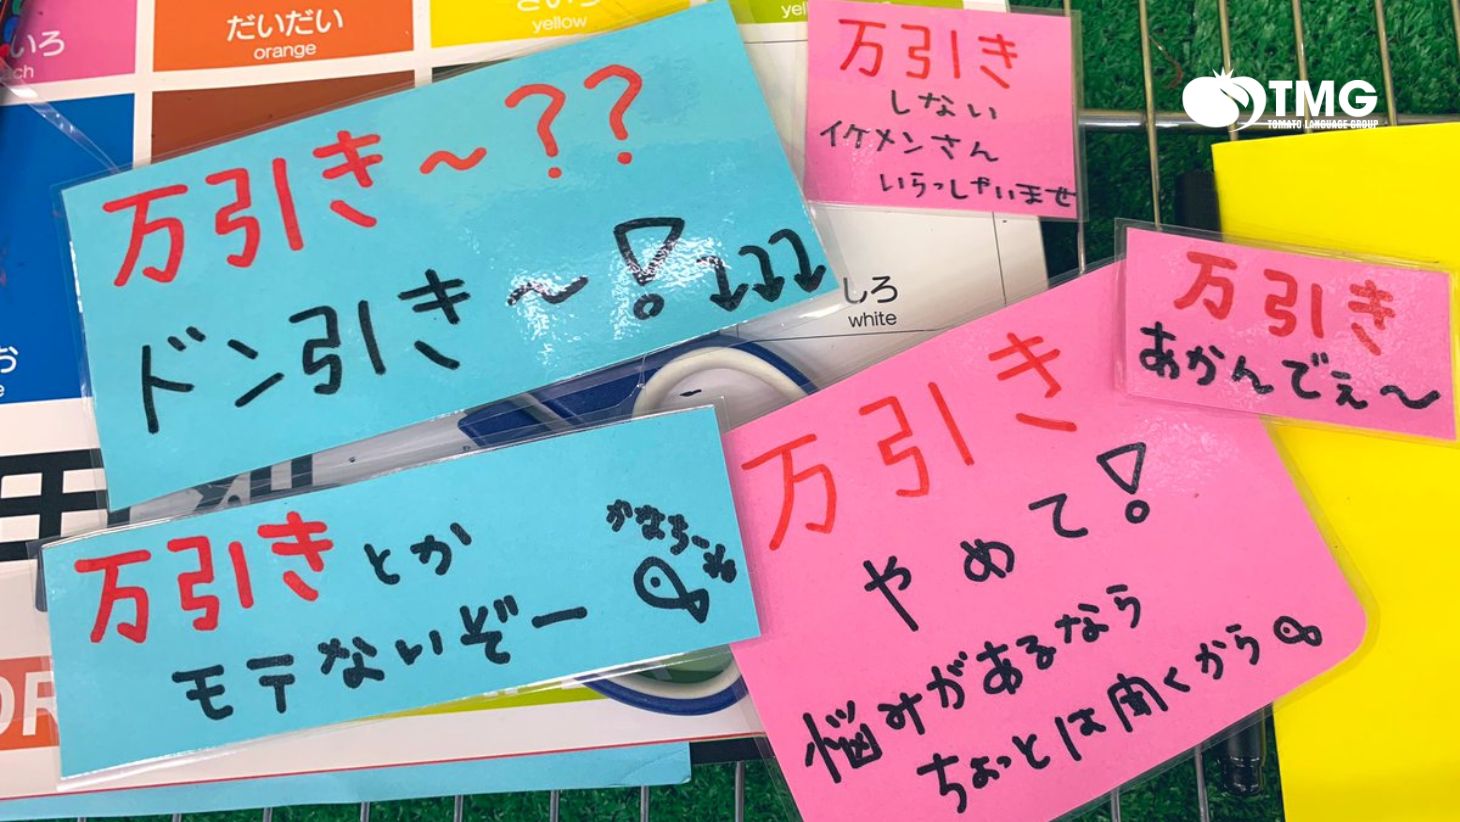 100+ các từ tiếng Nhật thông dụng nhất - Ảnh 3